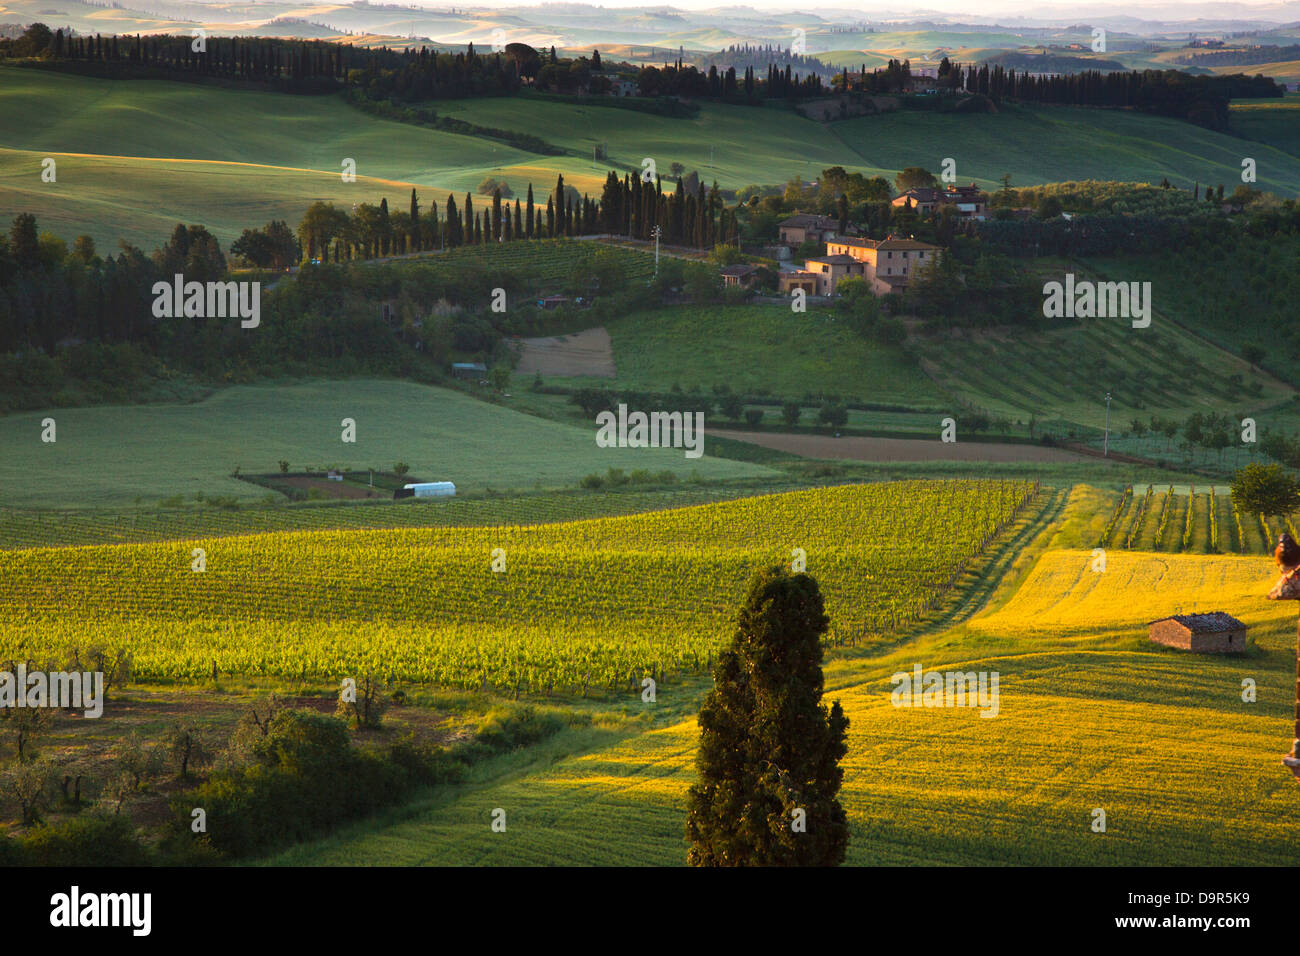 Trees in a field, Siena, Siena Province, Tuscany, Italy Stock Photo